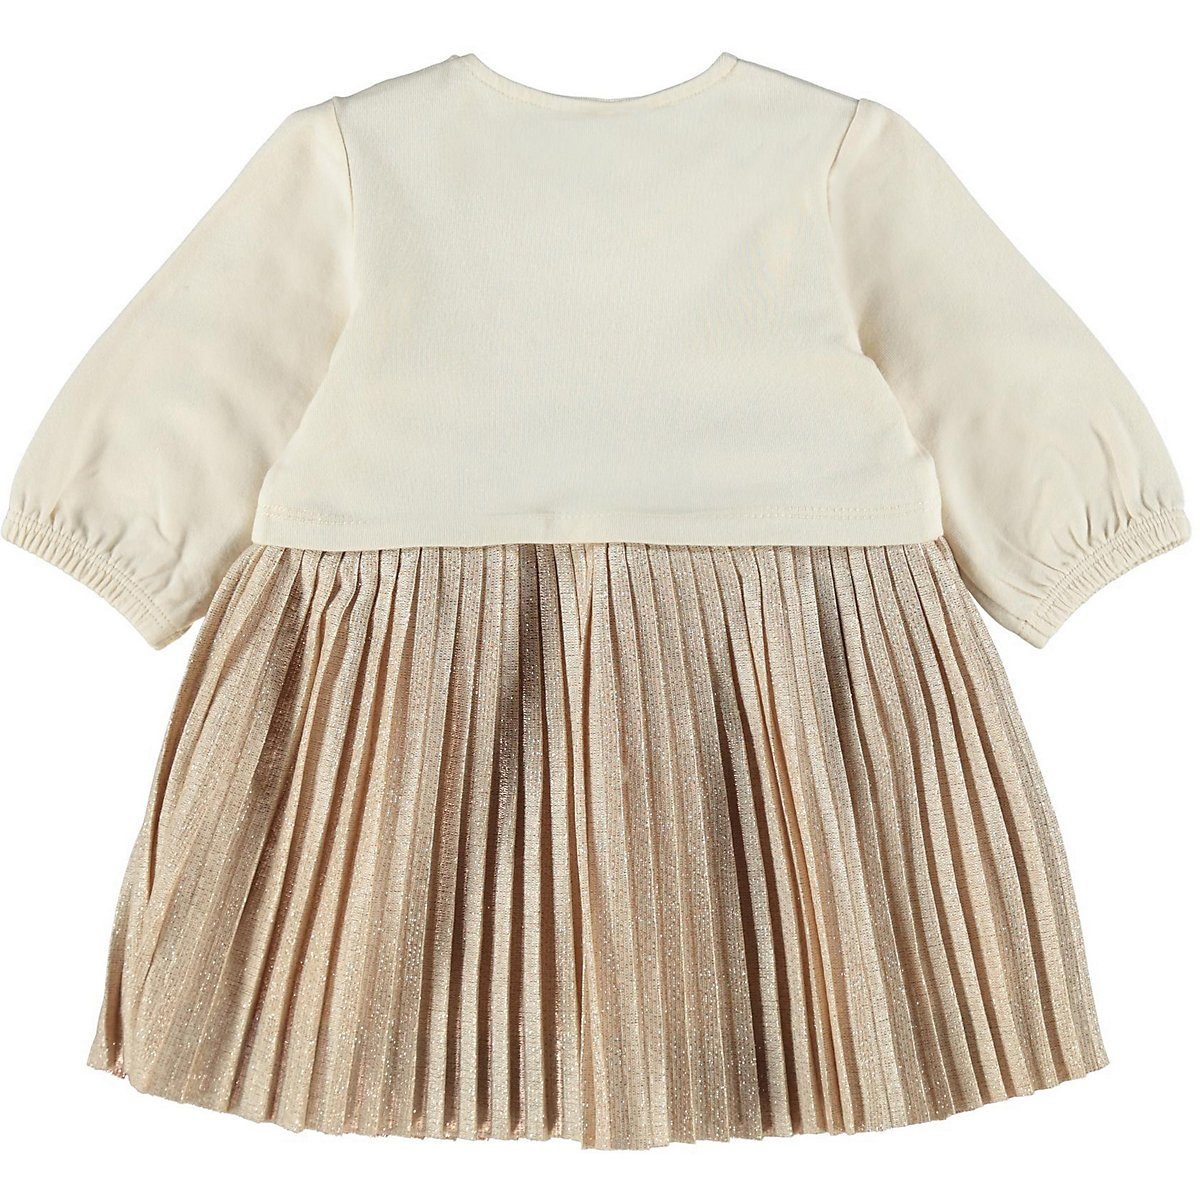 Kinder Mädchen (Gr. 50 - 92) Name It A-Linien-Kleid Baby Kleid, Organic Cotton